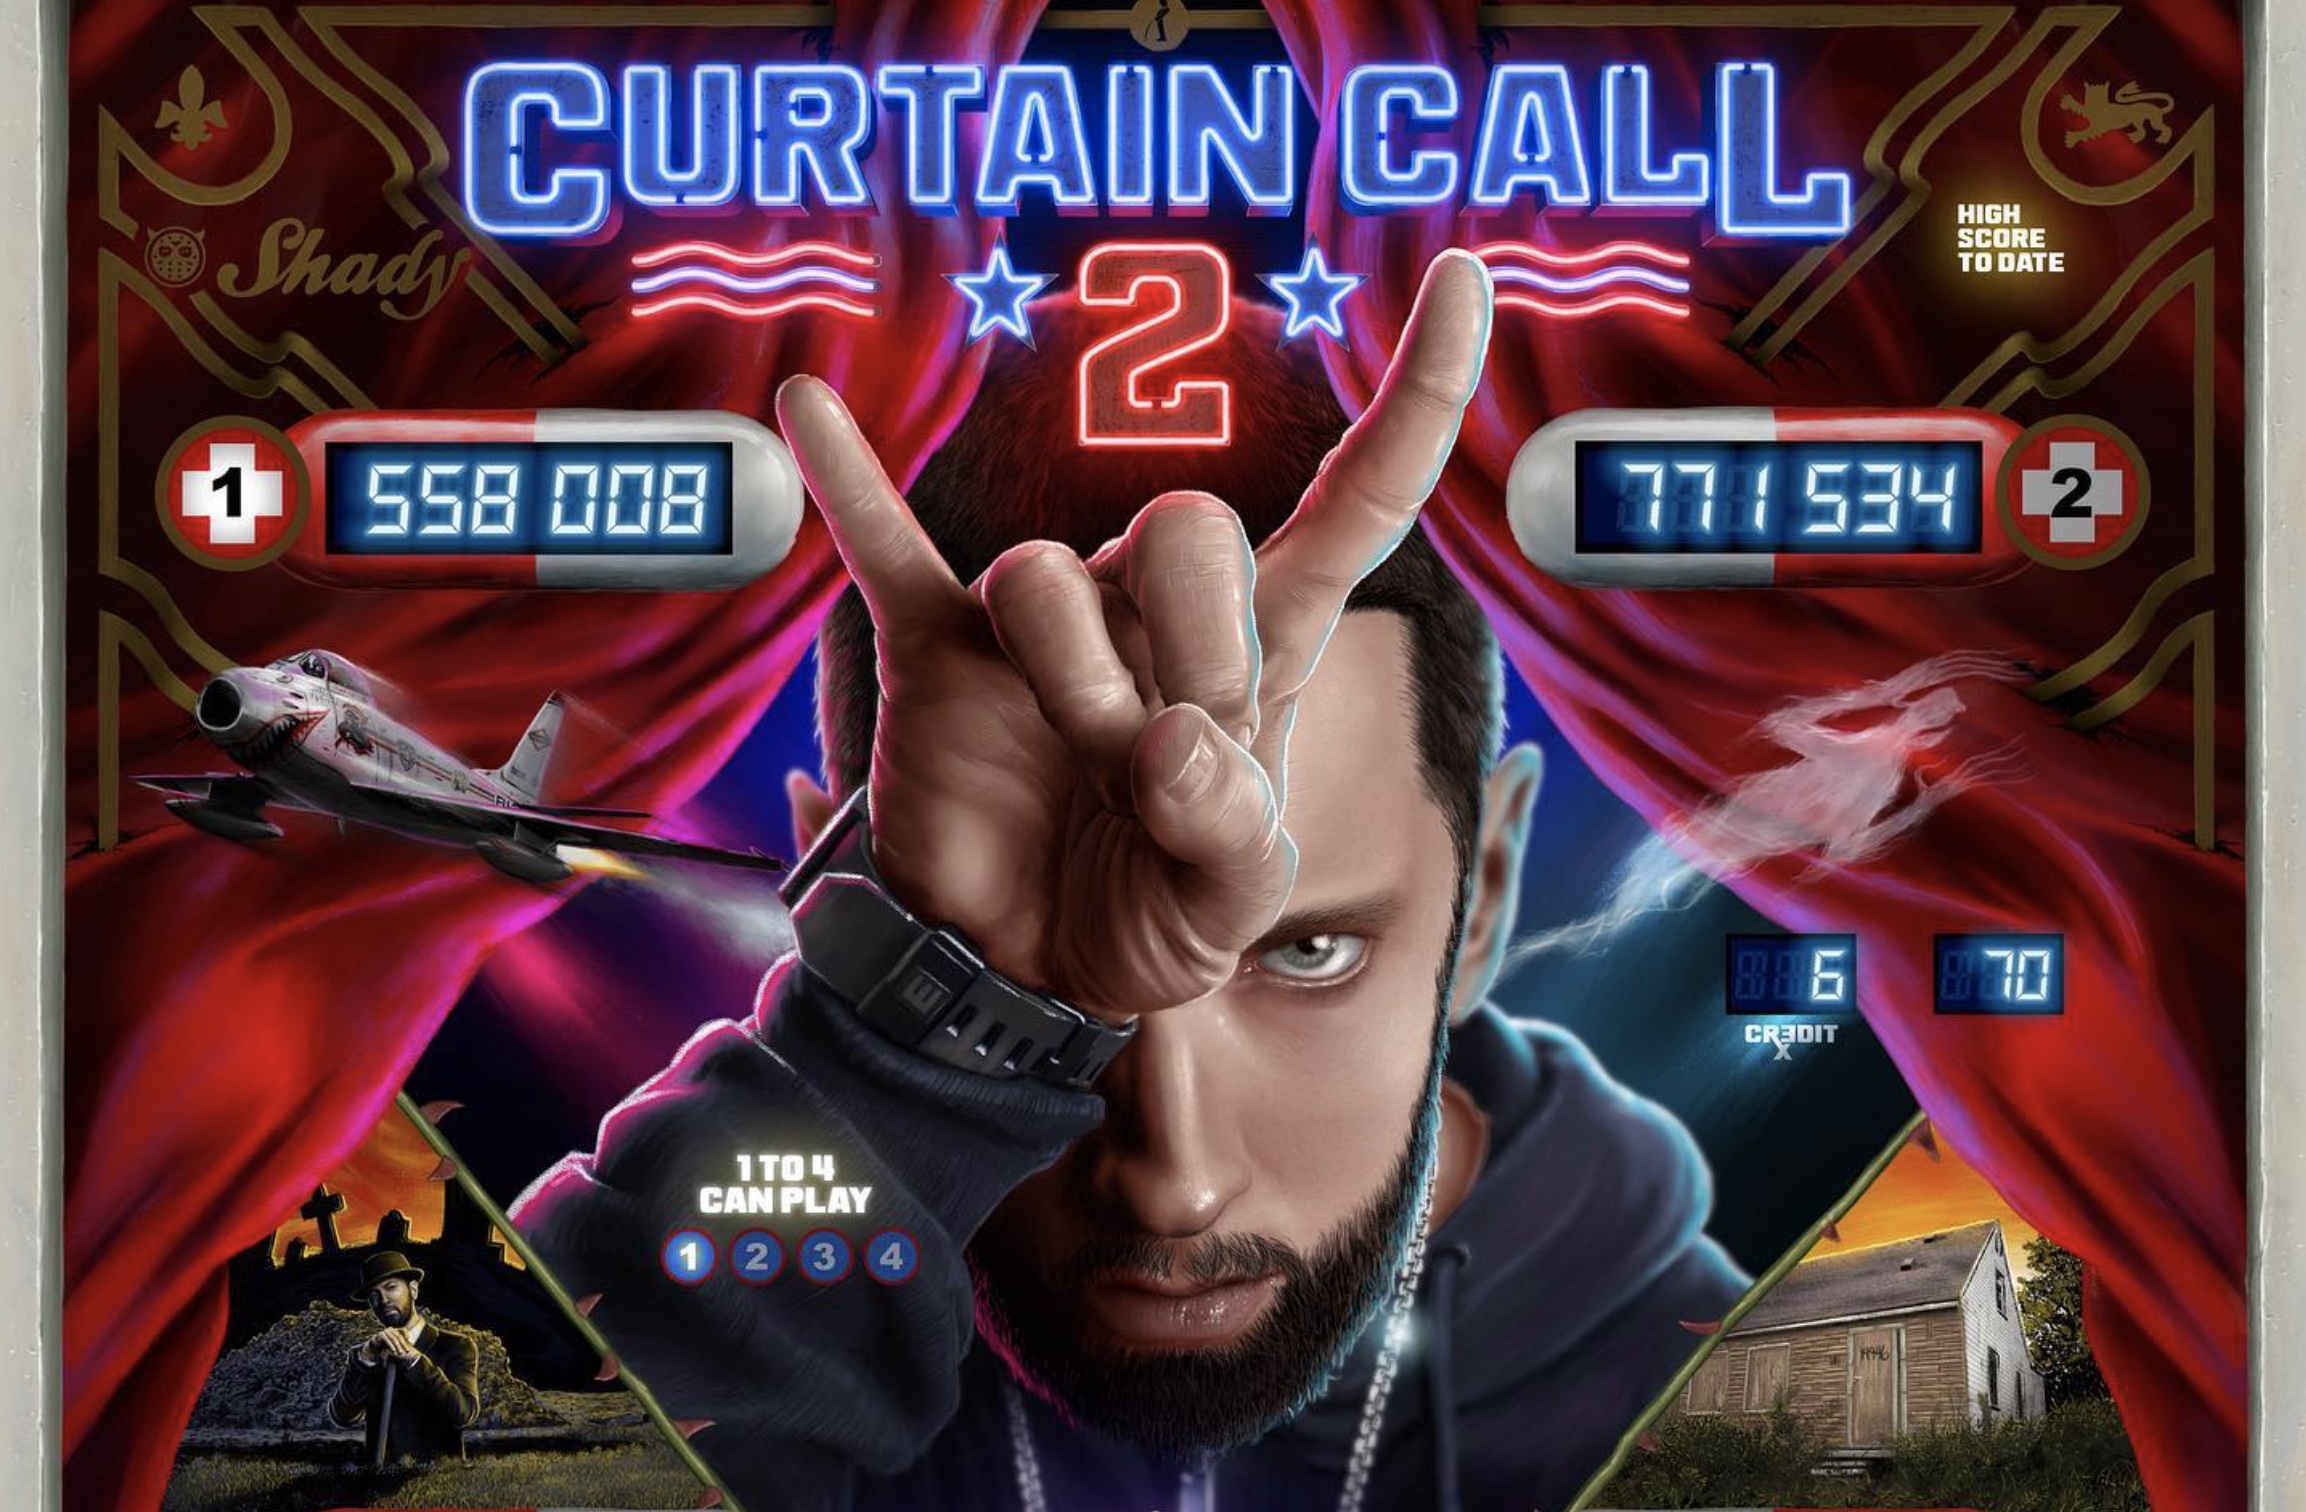 Eminem curtain call. Eminem Curtain Call 2. Eminem. Curtain Call. The Hits. 2005. Эминема Curtain Call. Альбомы Эминема Curtain Call.